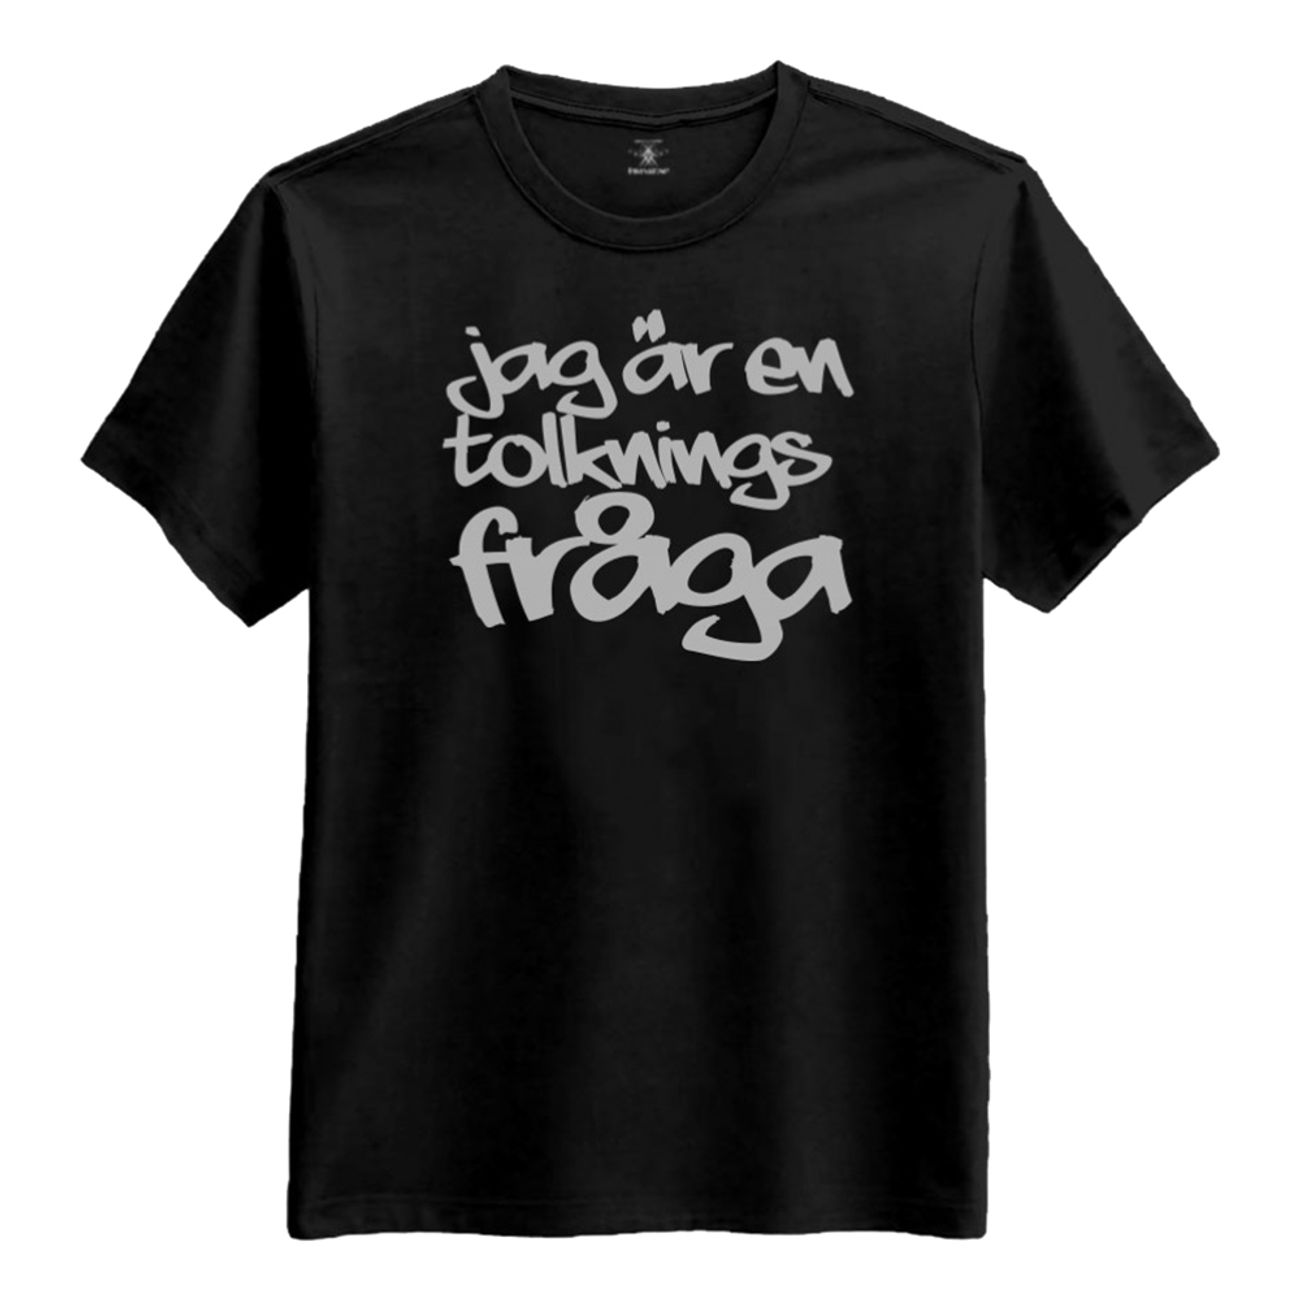 jag-ar-en-tolknings-fraga-t-shirt-1